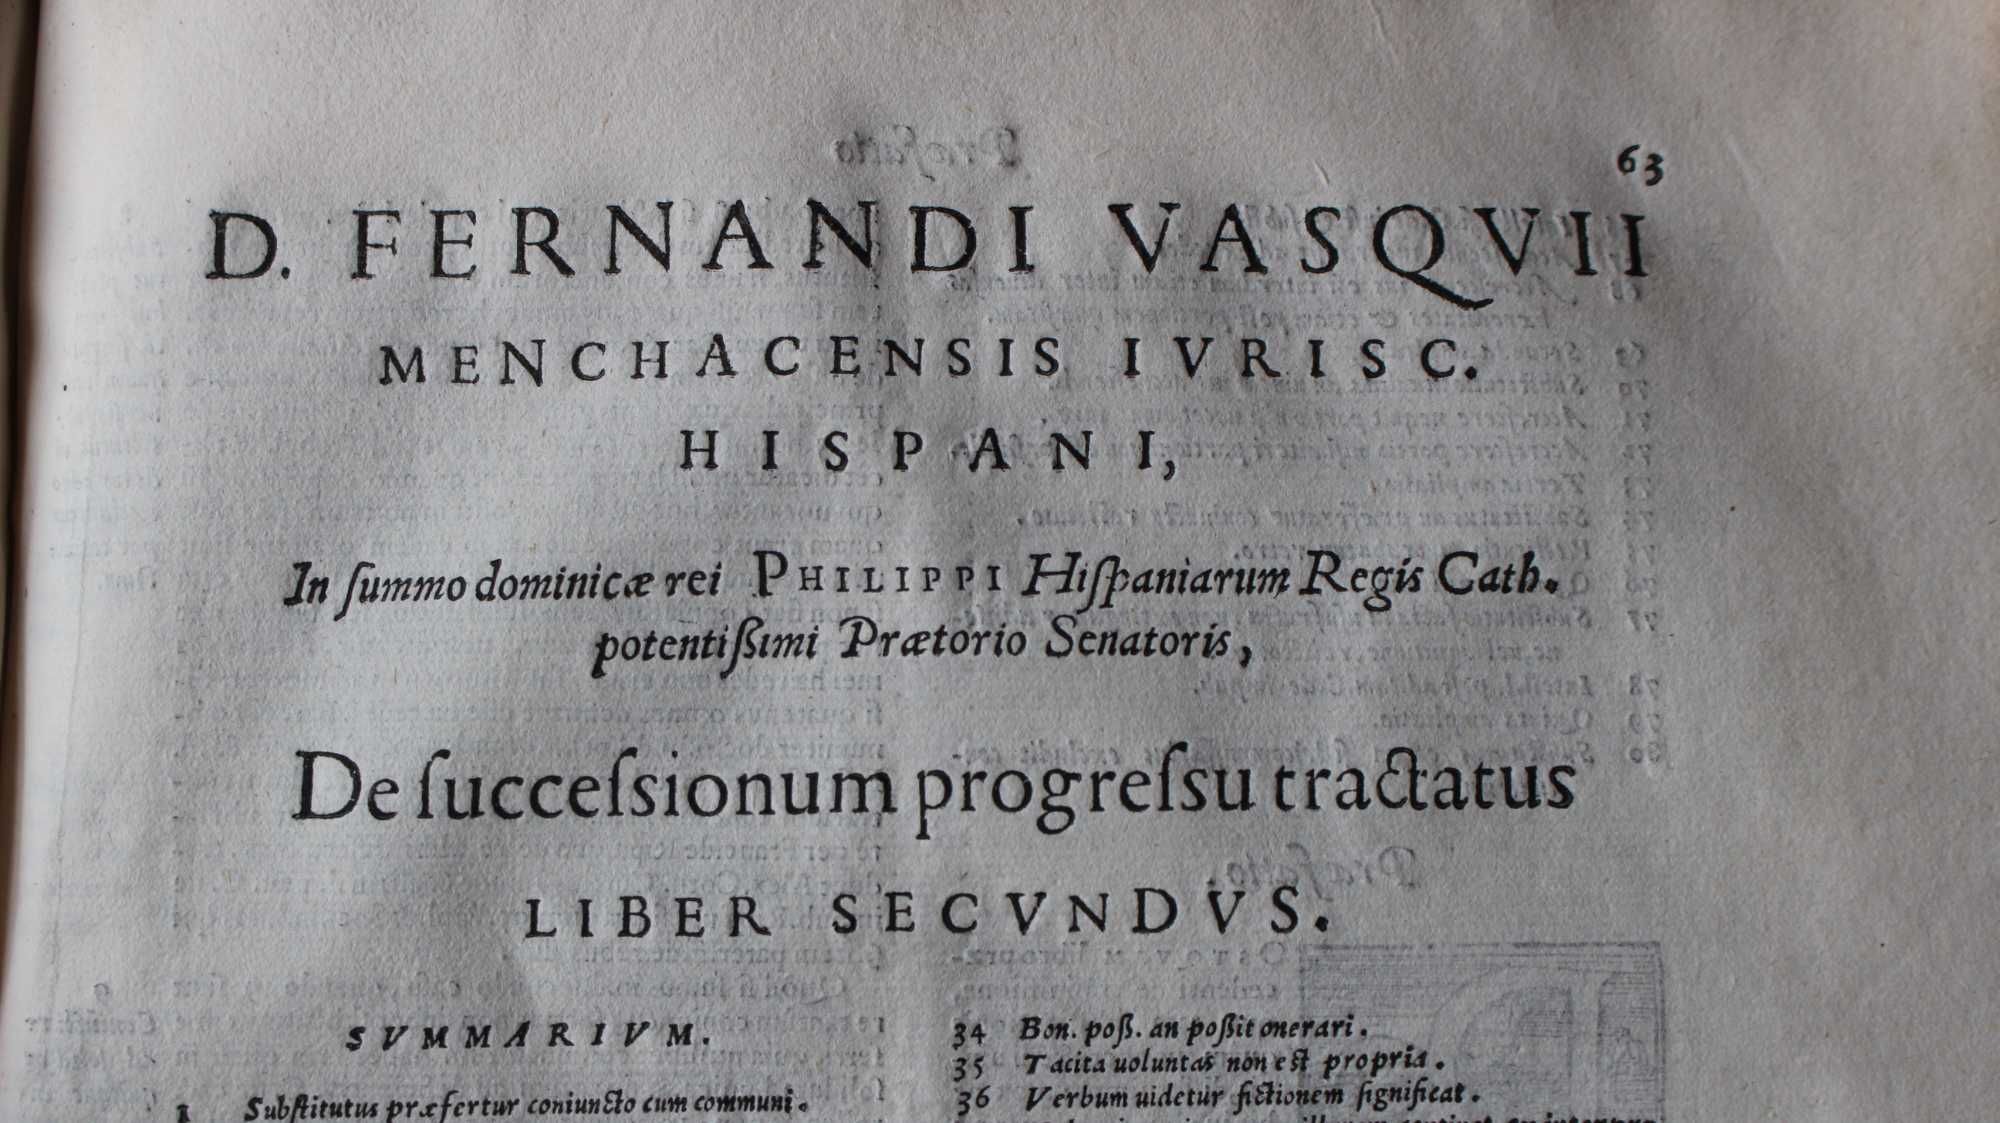 D. FERNANDI VASQVII PINCIANI MENCHACENSIS, DE SVCCESSIONUM...1564 RARO